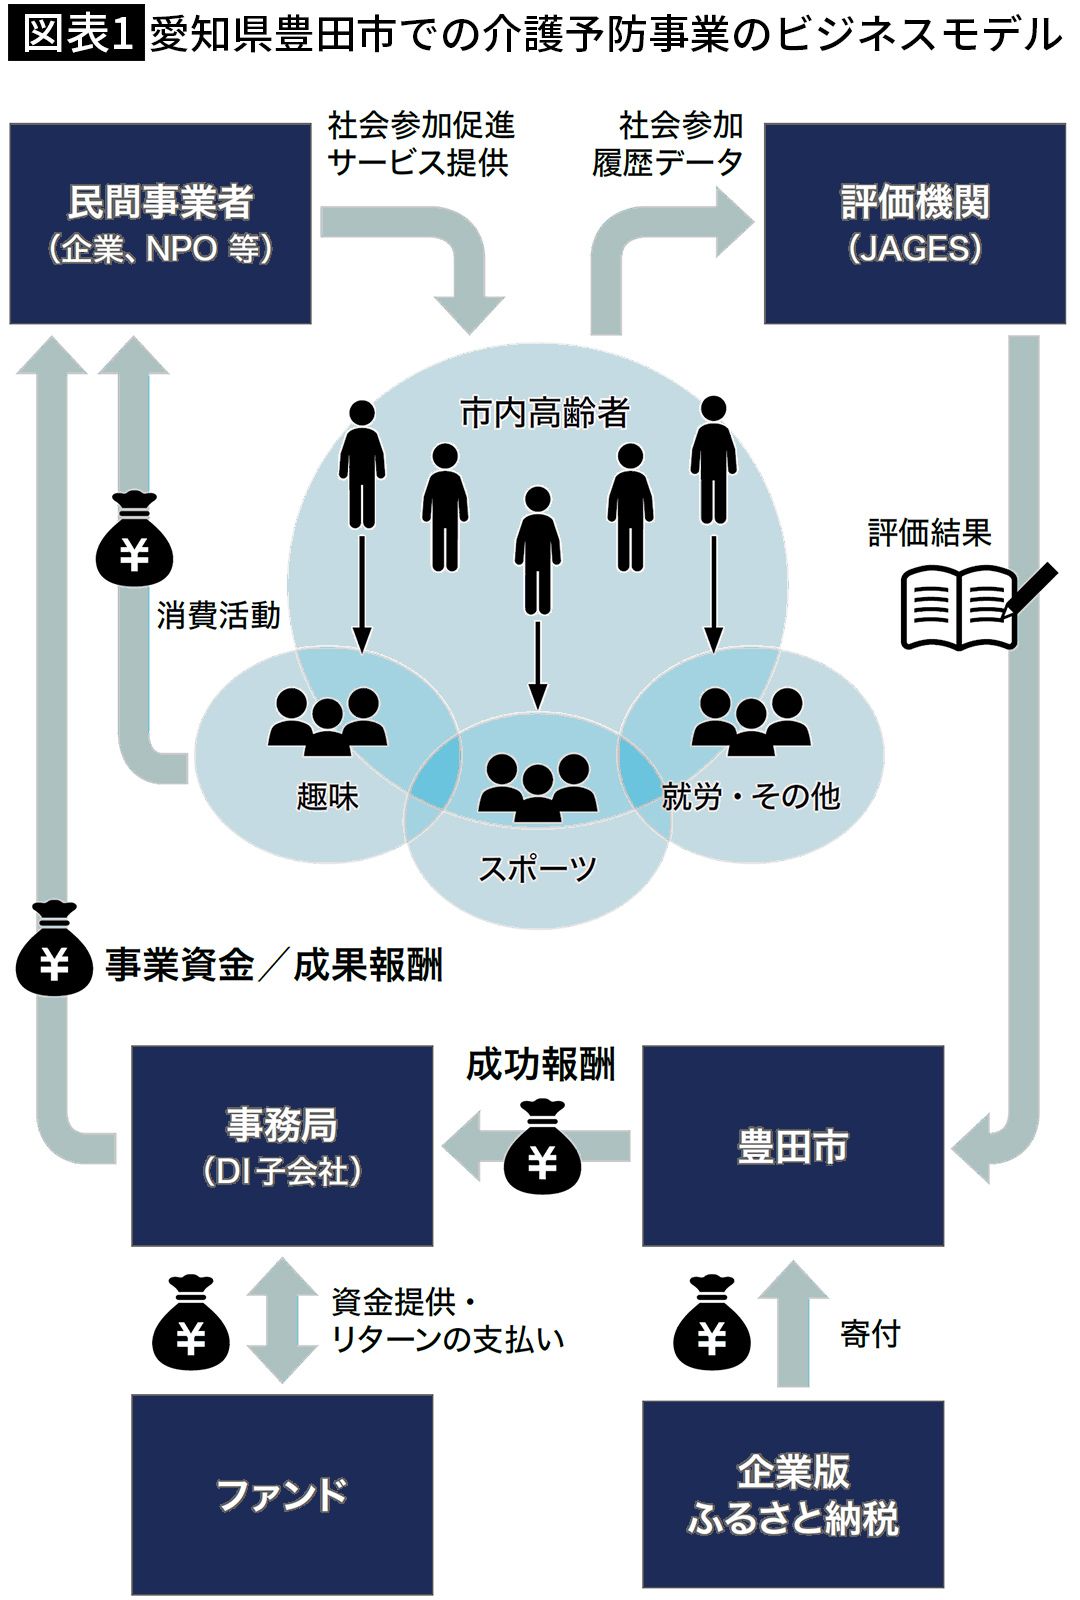 【図表1】愛知県豊田市での介護予防事業のビジネスモデル